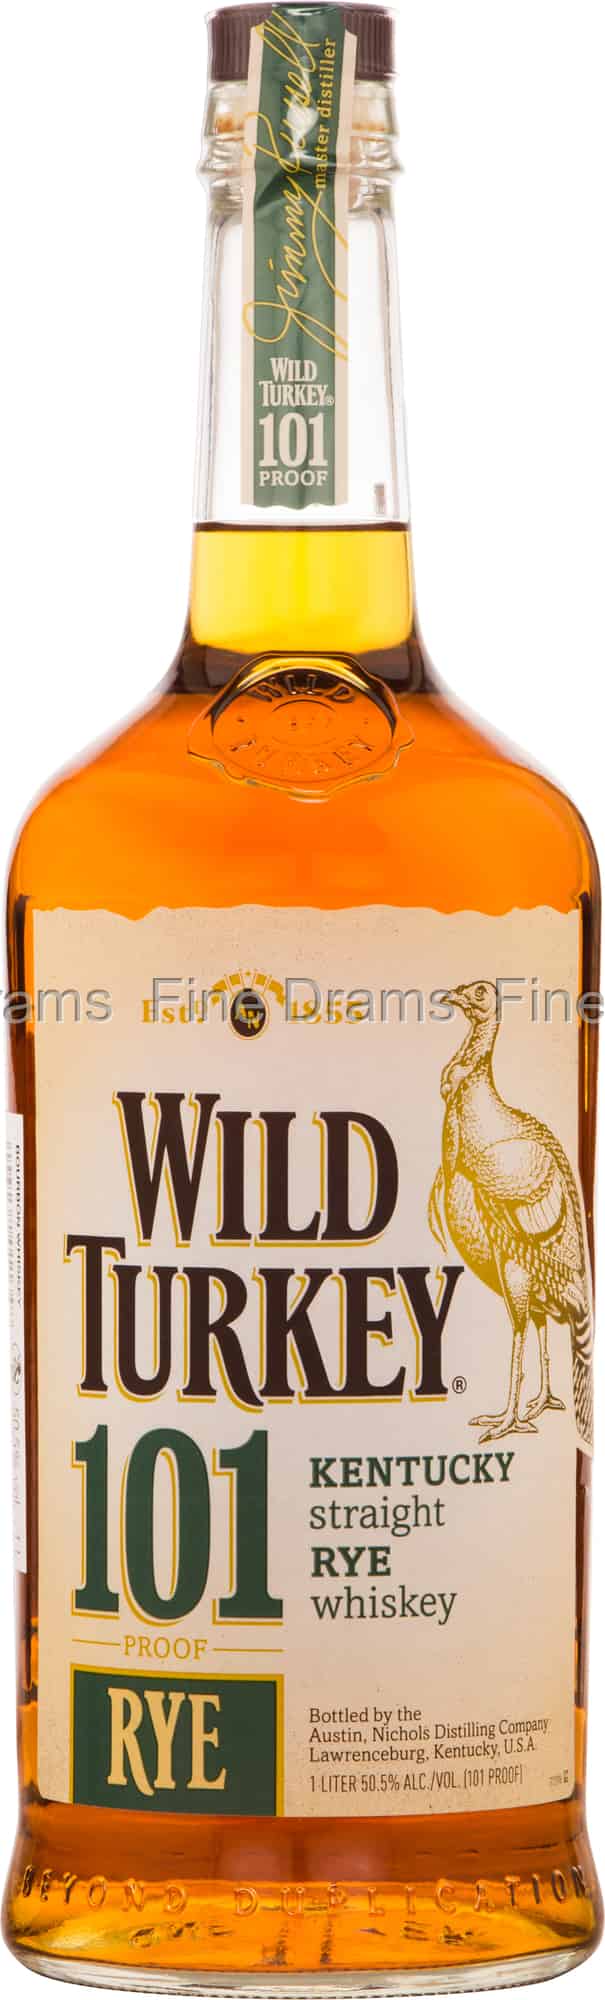 wild turkey whiskey ingredients